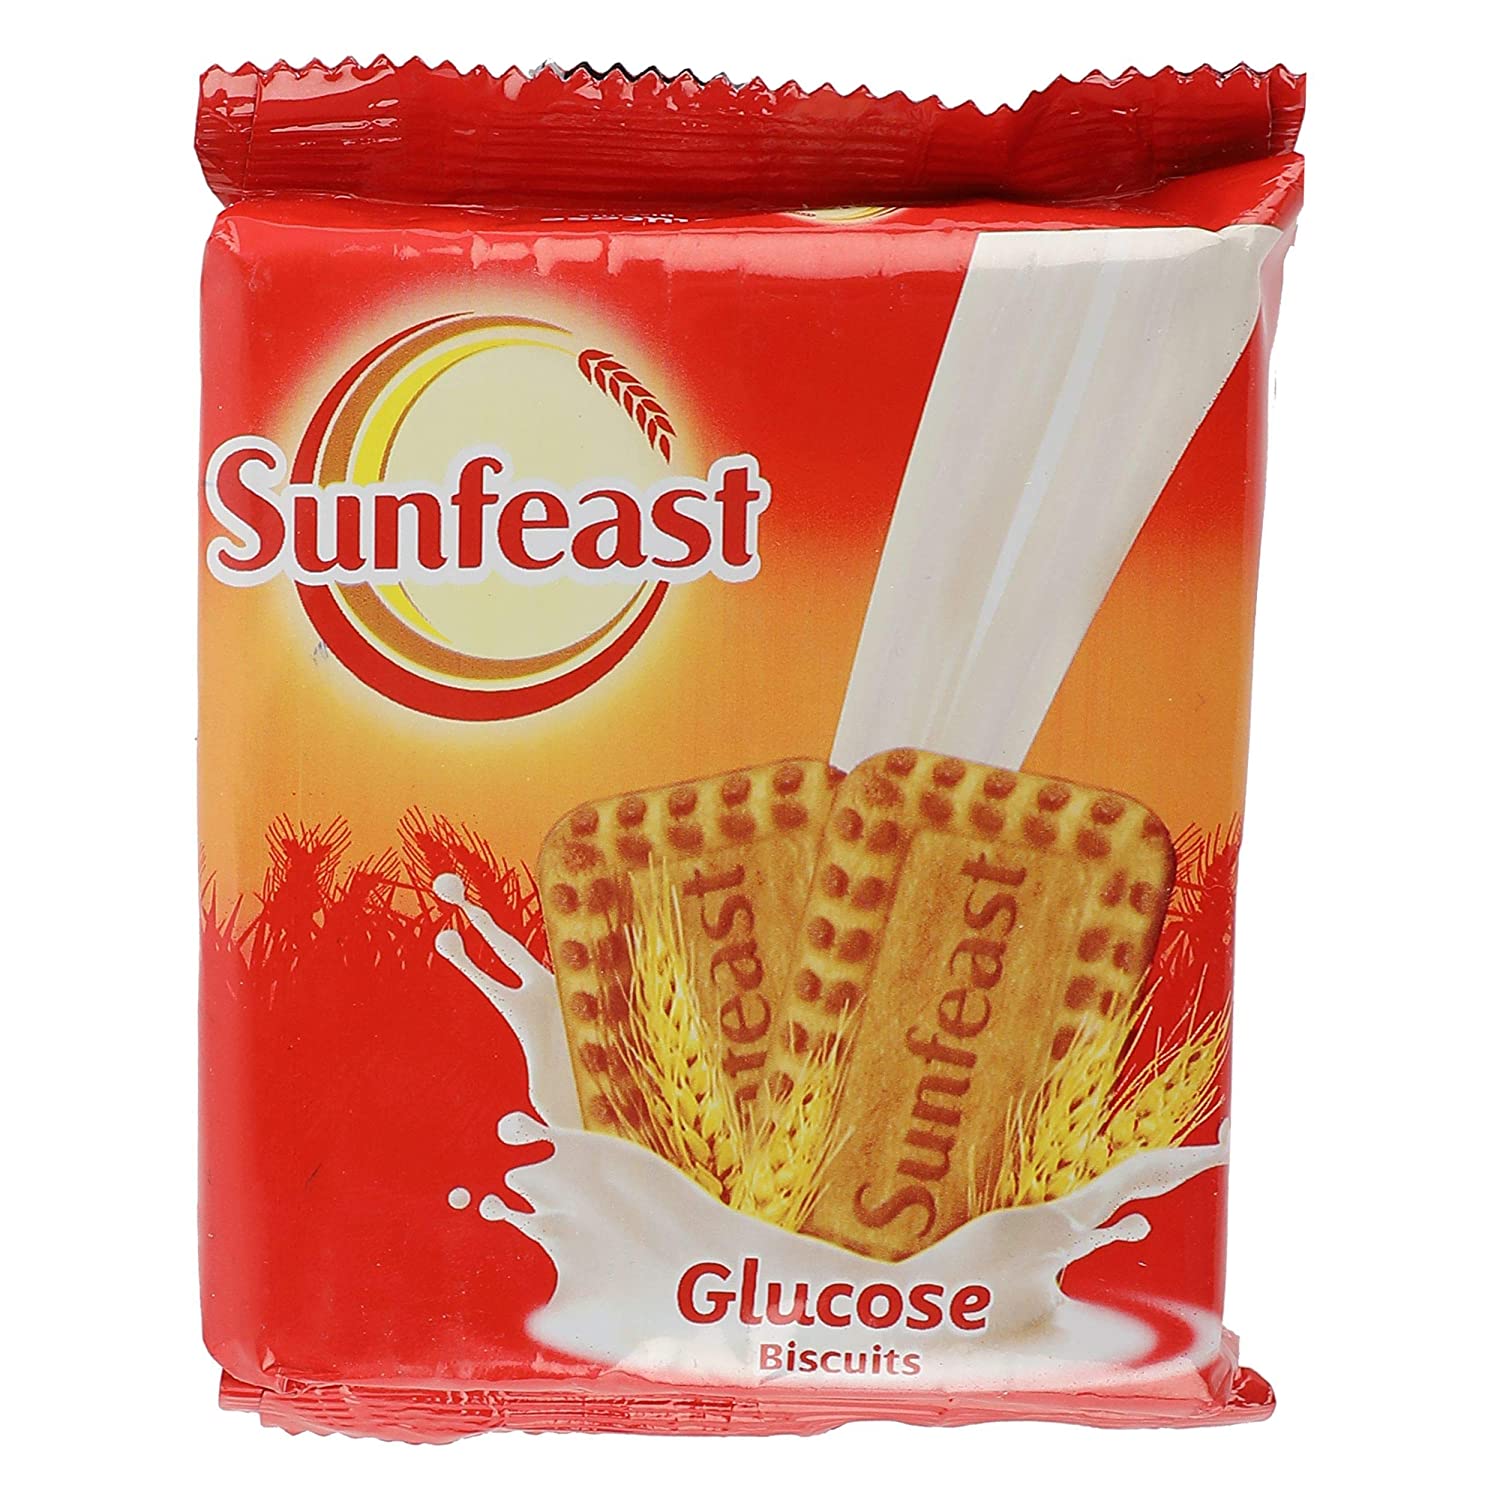 Sunfeast Biscuits - Glucose, 120g